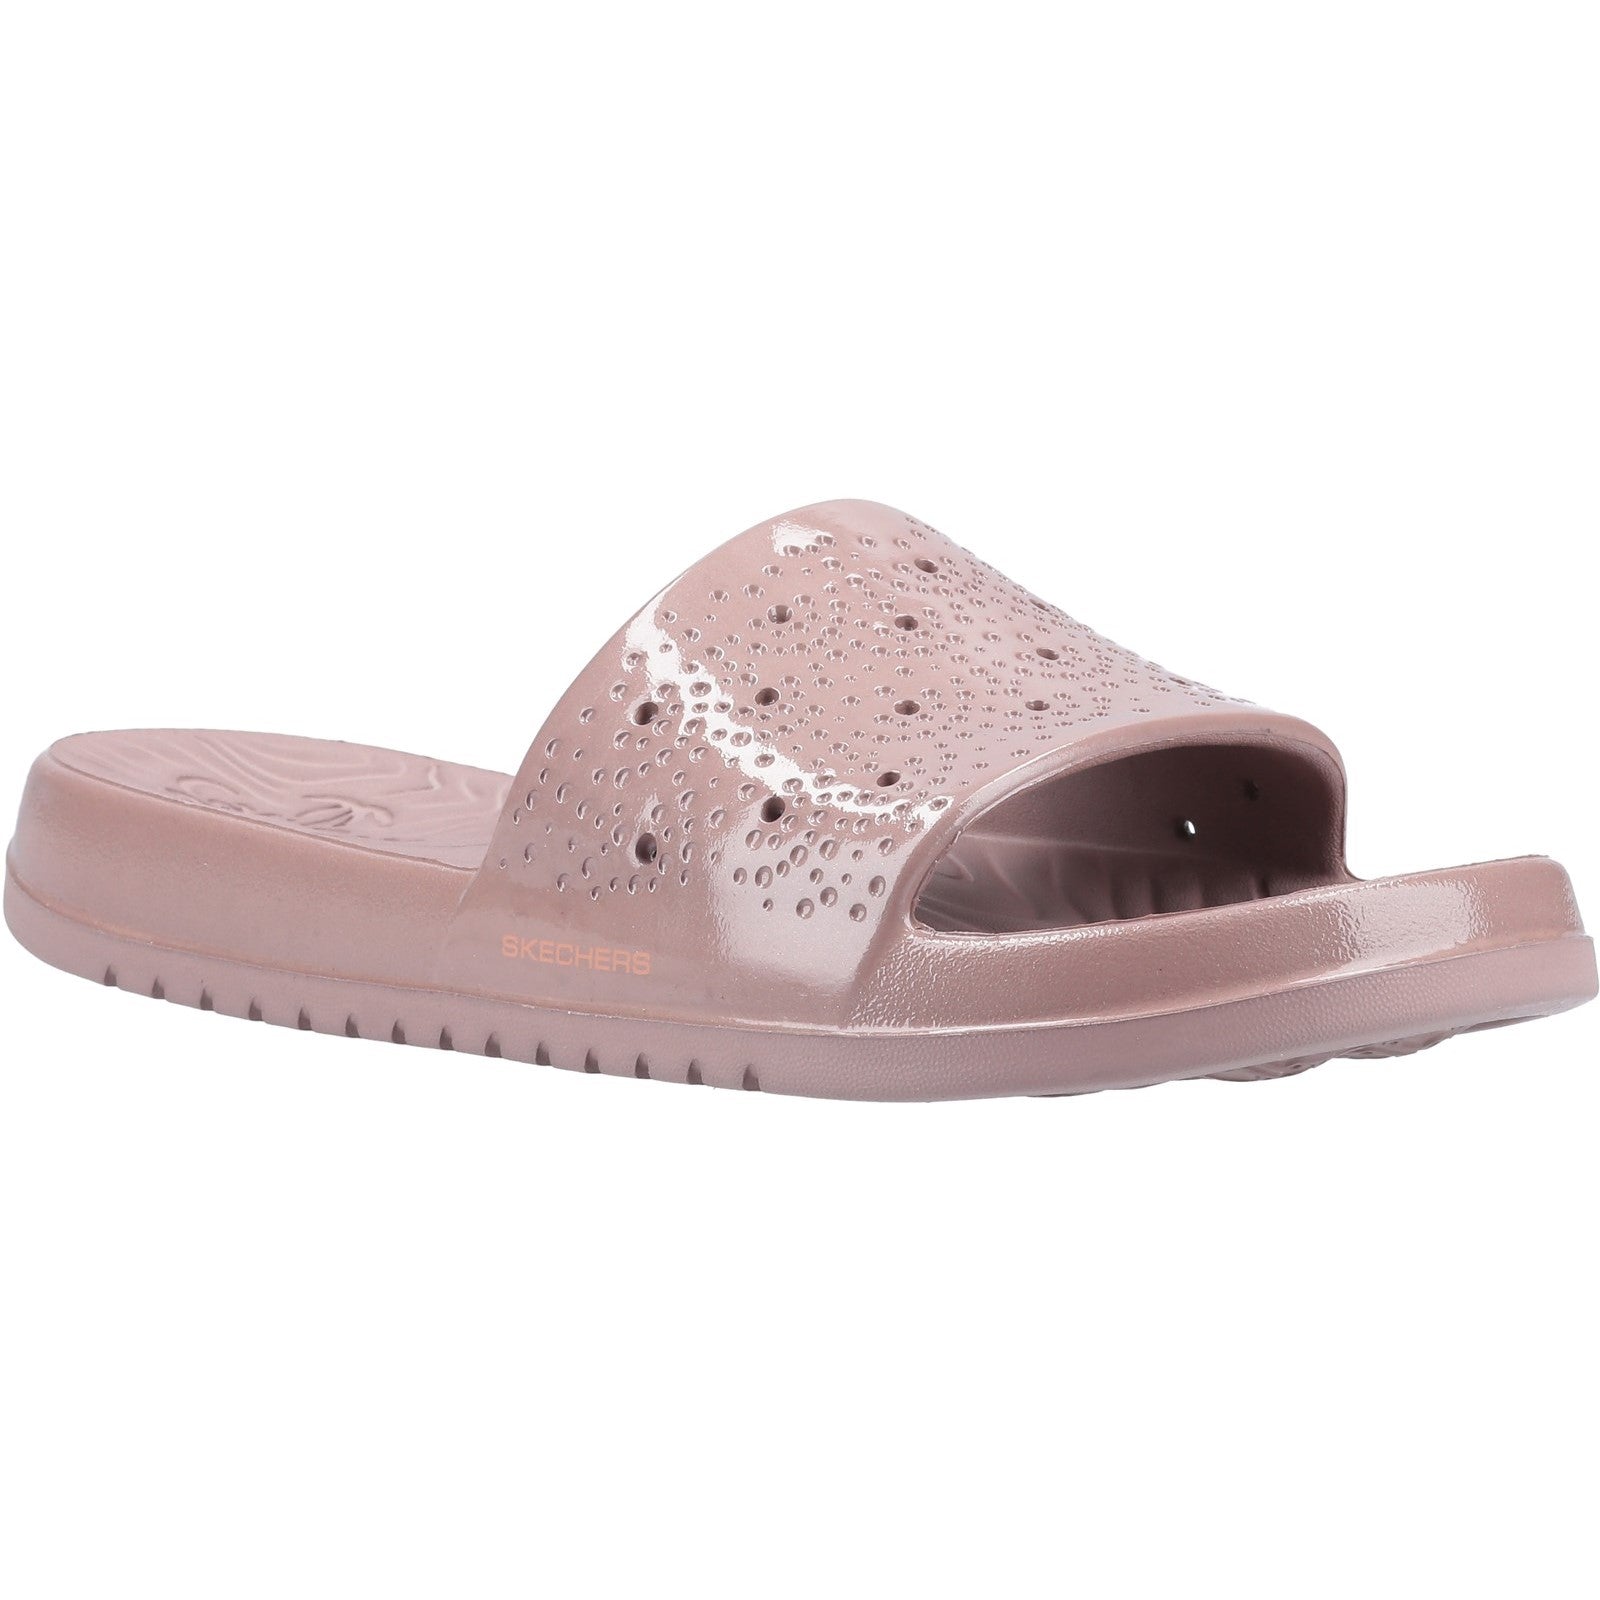 Skechers Gleam Sizzling Slide Sandal